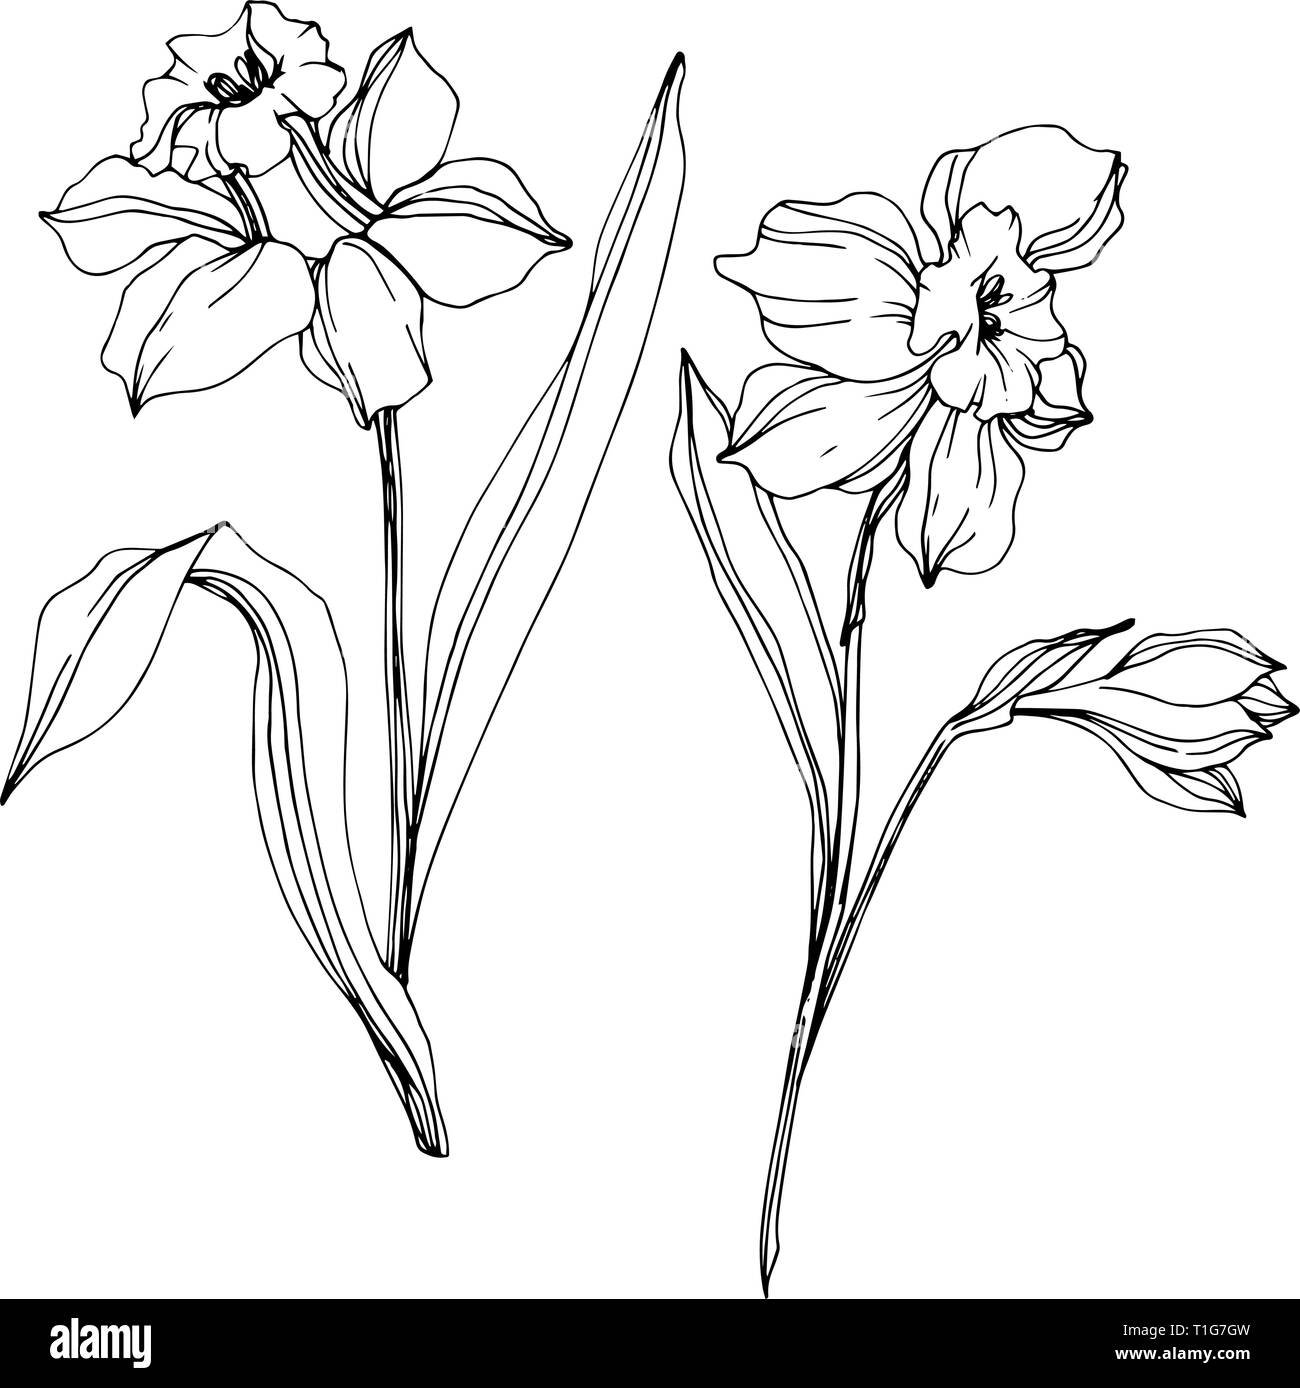 Vector floral fleur Narcisse botanique. Lame de ressort sauvages isolés de fleurs sauvages. Gravée en noir et blanc art encre illustration narcisse isolés elem Illustration de Vecteur